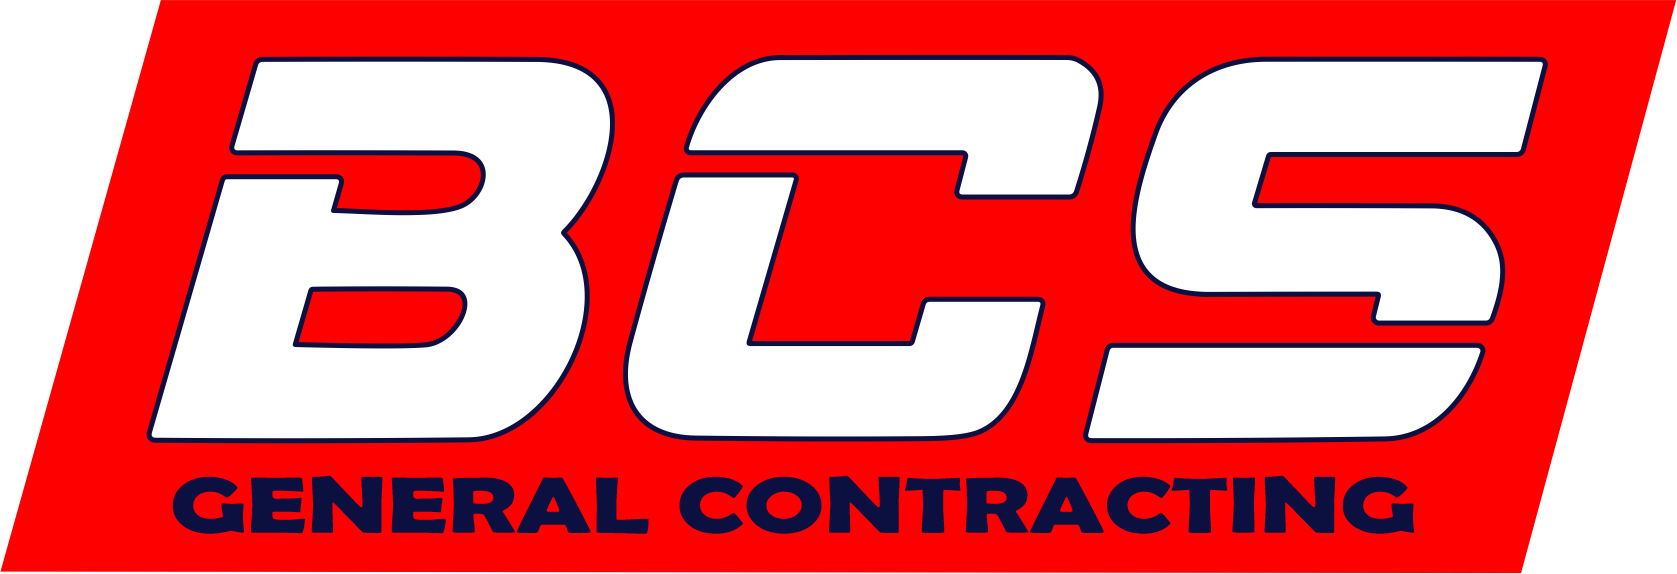 BCS General Contracting Logo